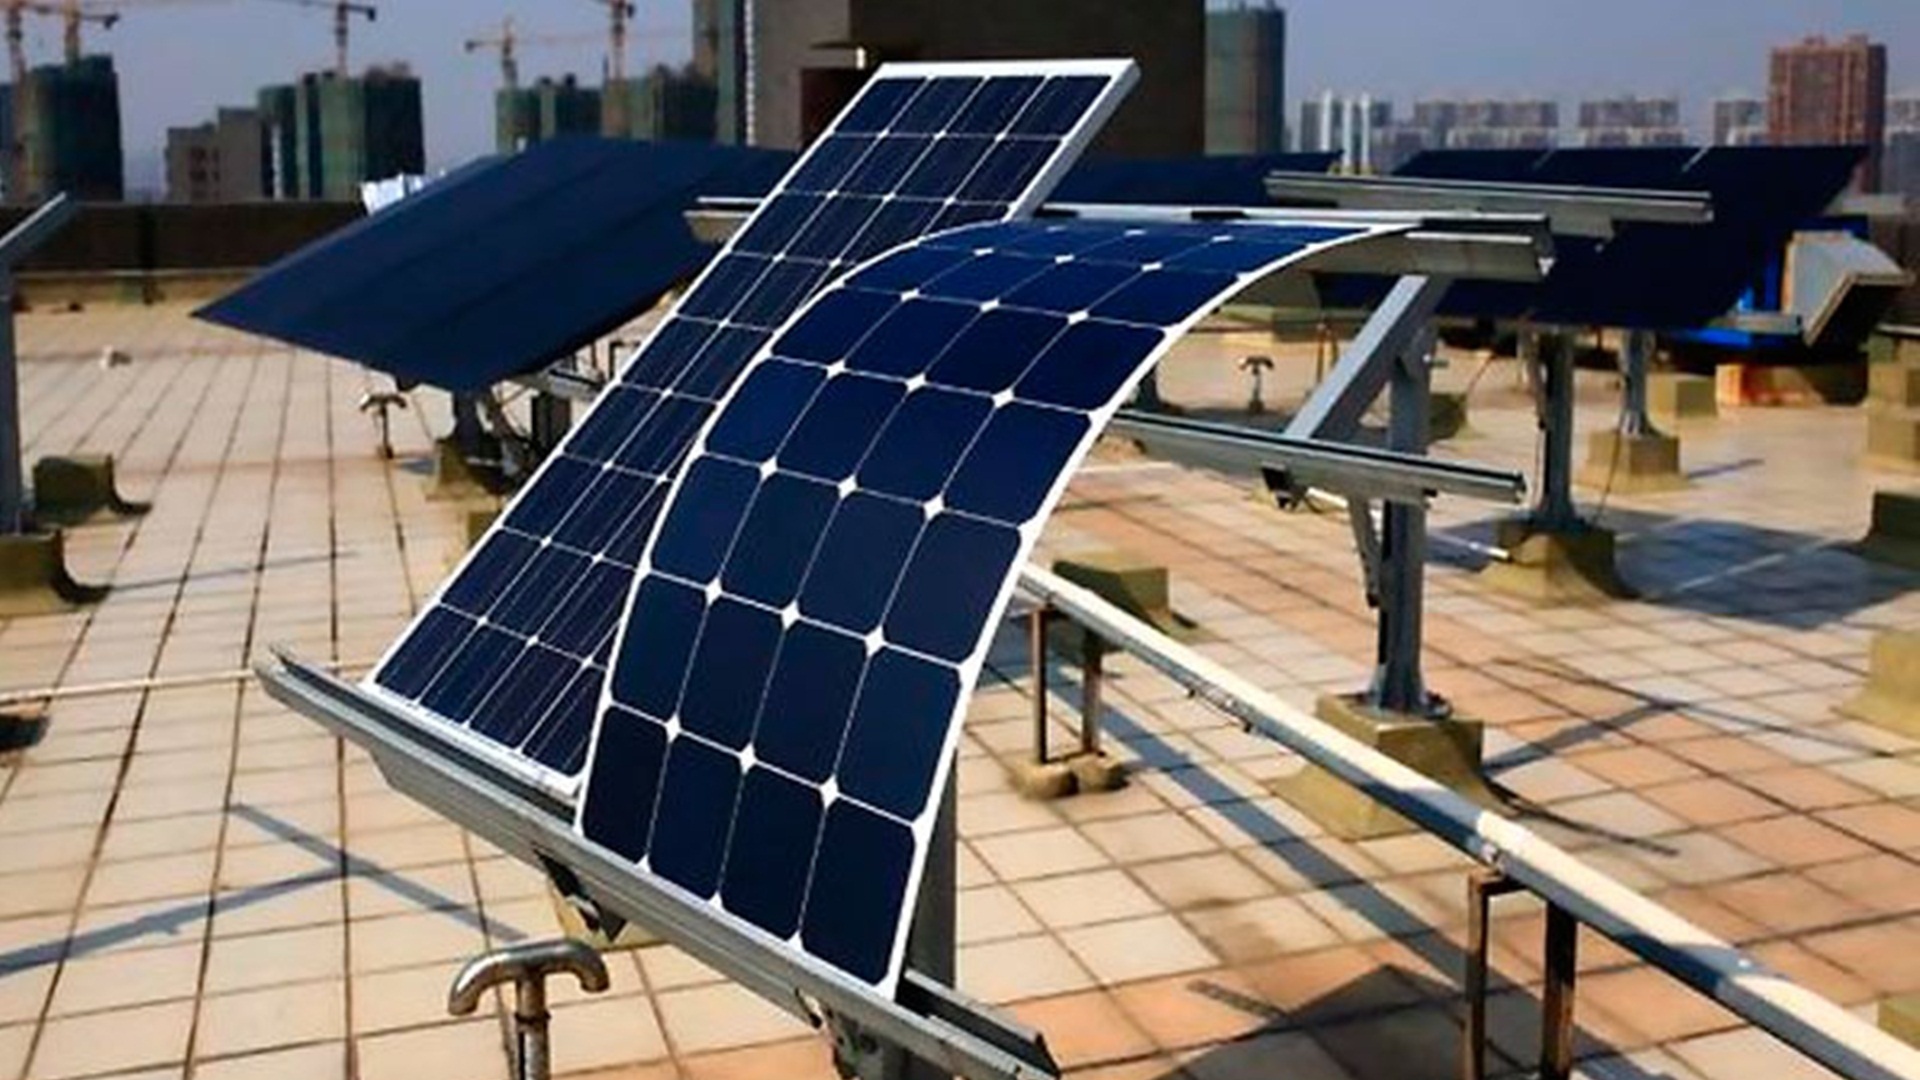 Las placas solares flexibles para coches ya son una realidad en Japón